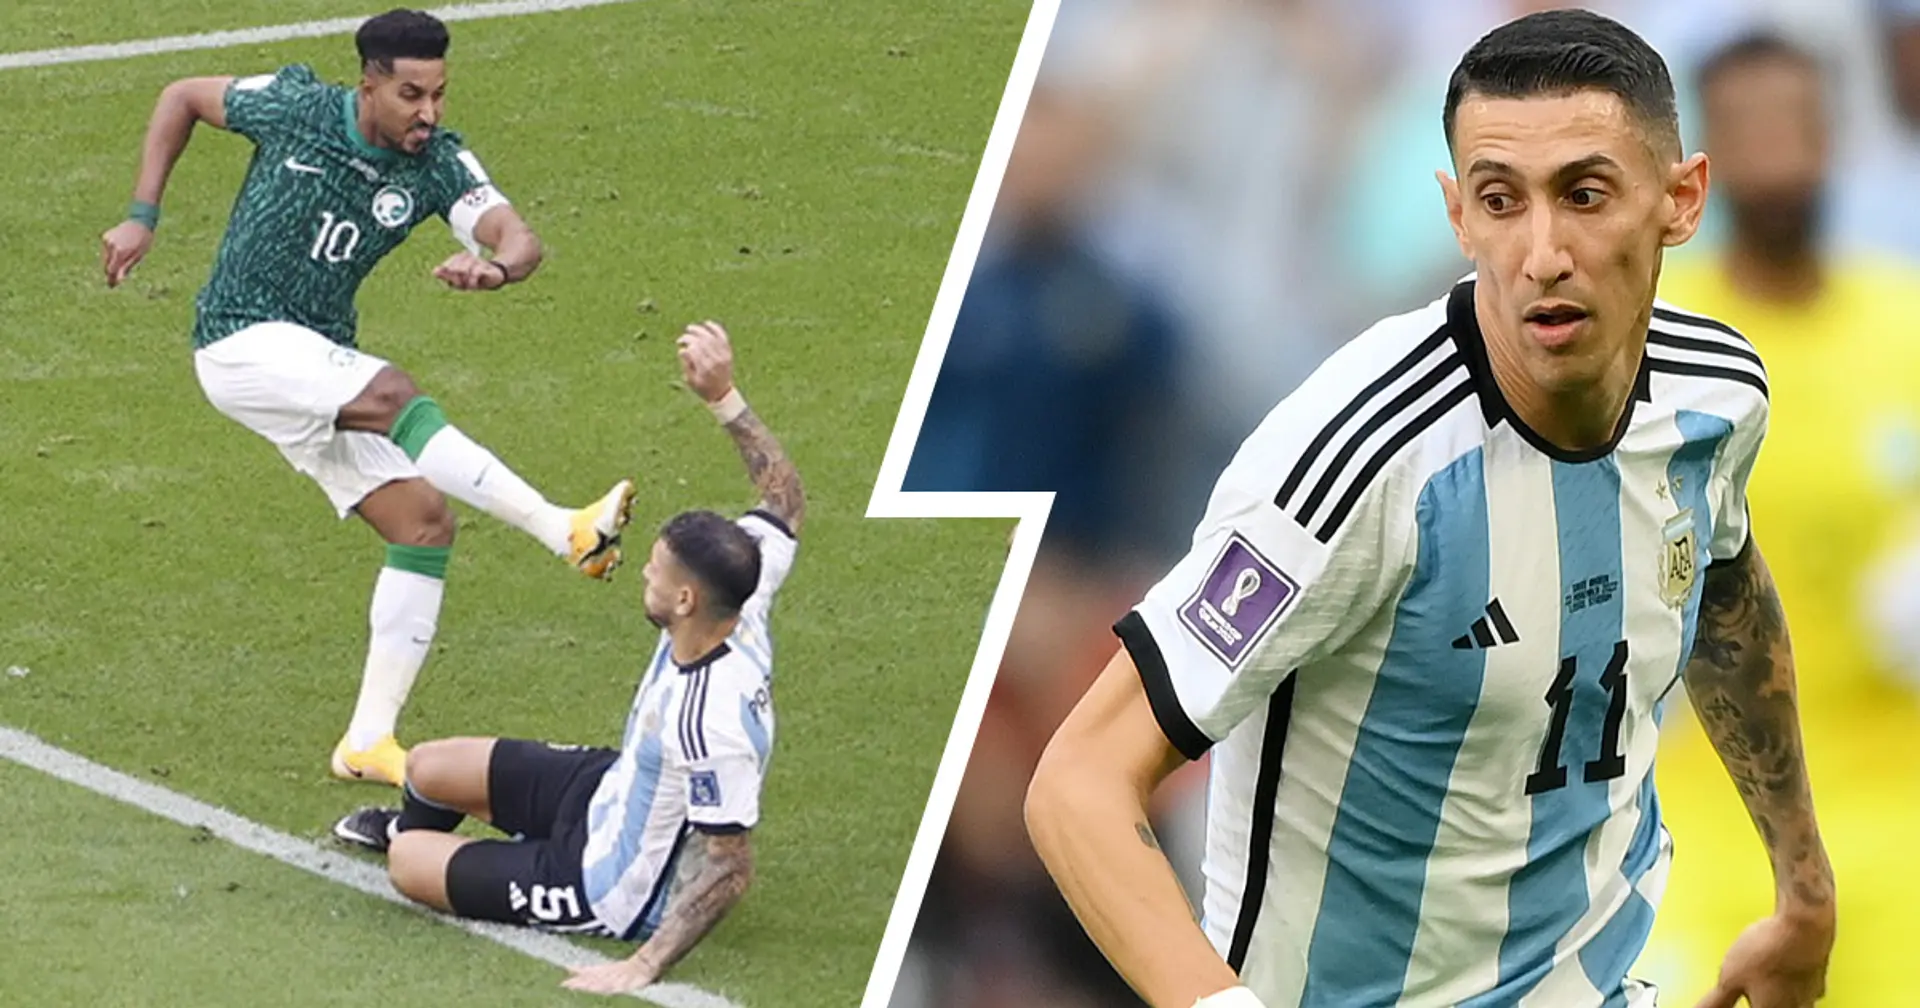 L'Arabia Saudita batte a sorpresa l'argentina ai Mondiali: come hanno giocato Paredes e Di Maria? L'analisi